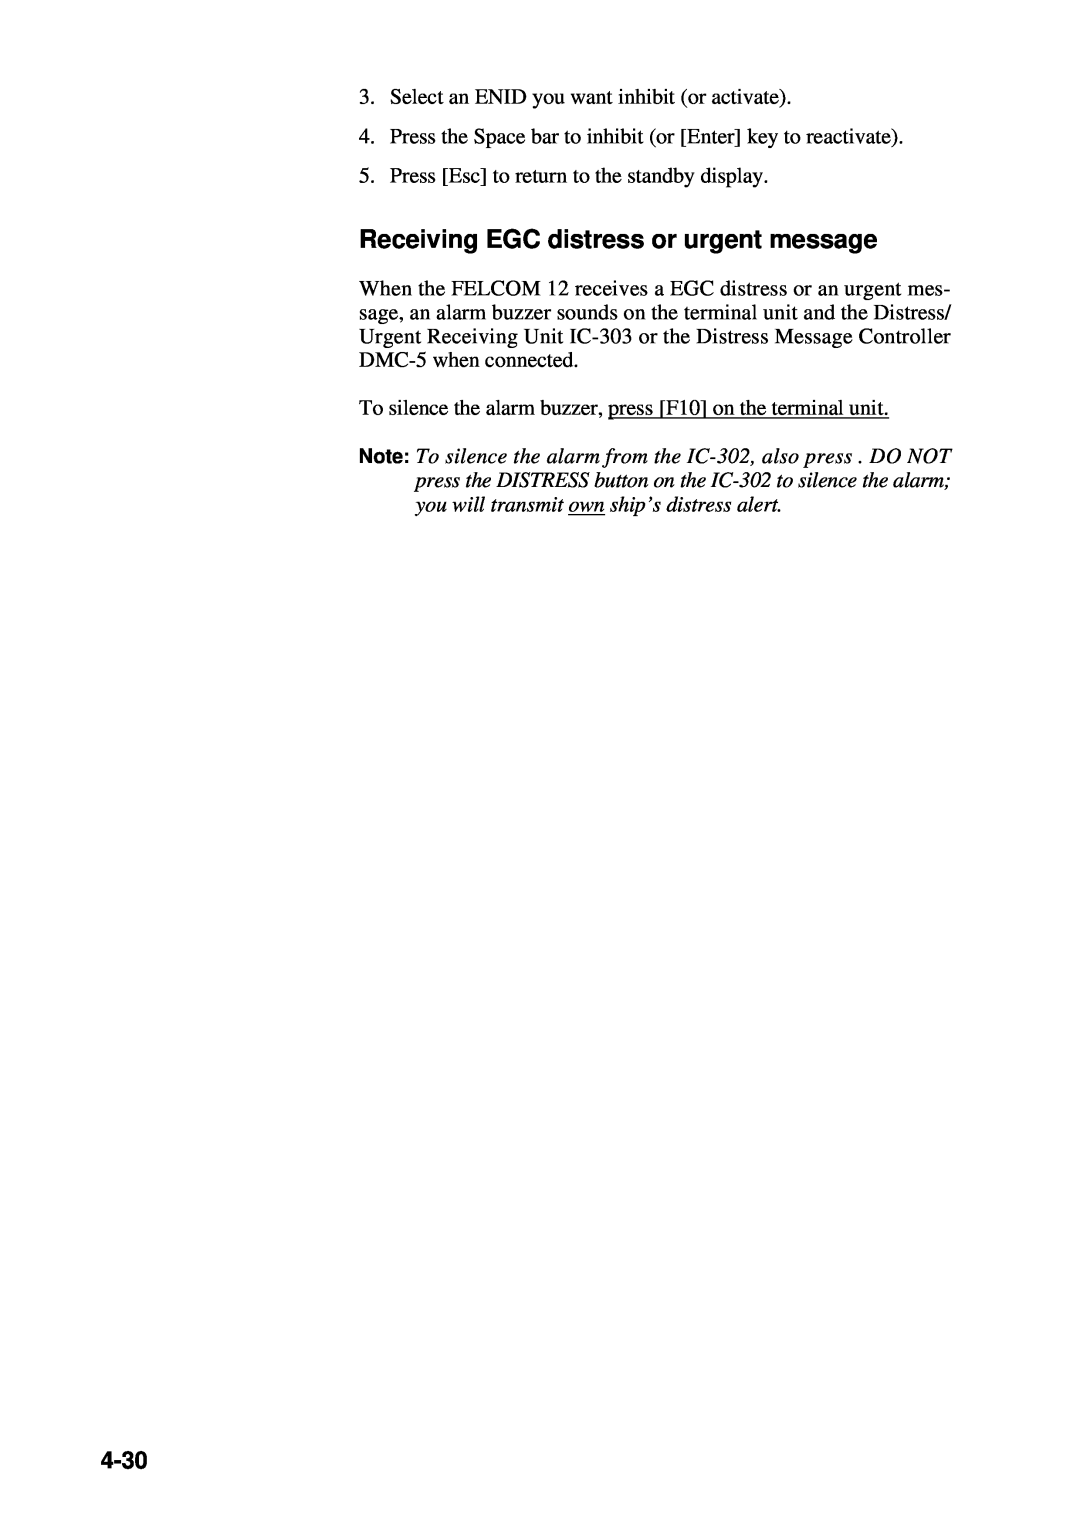 Furuno RC-1500-1T manual Receiving EGC distress or urgent message, 4-30 